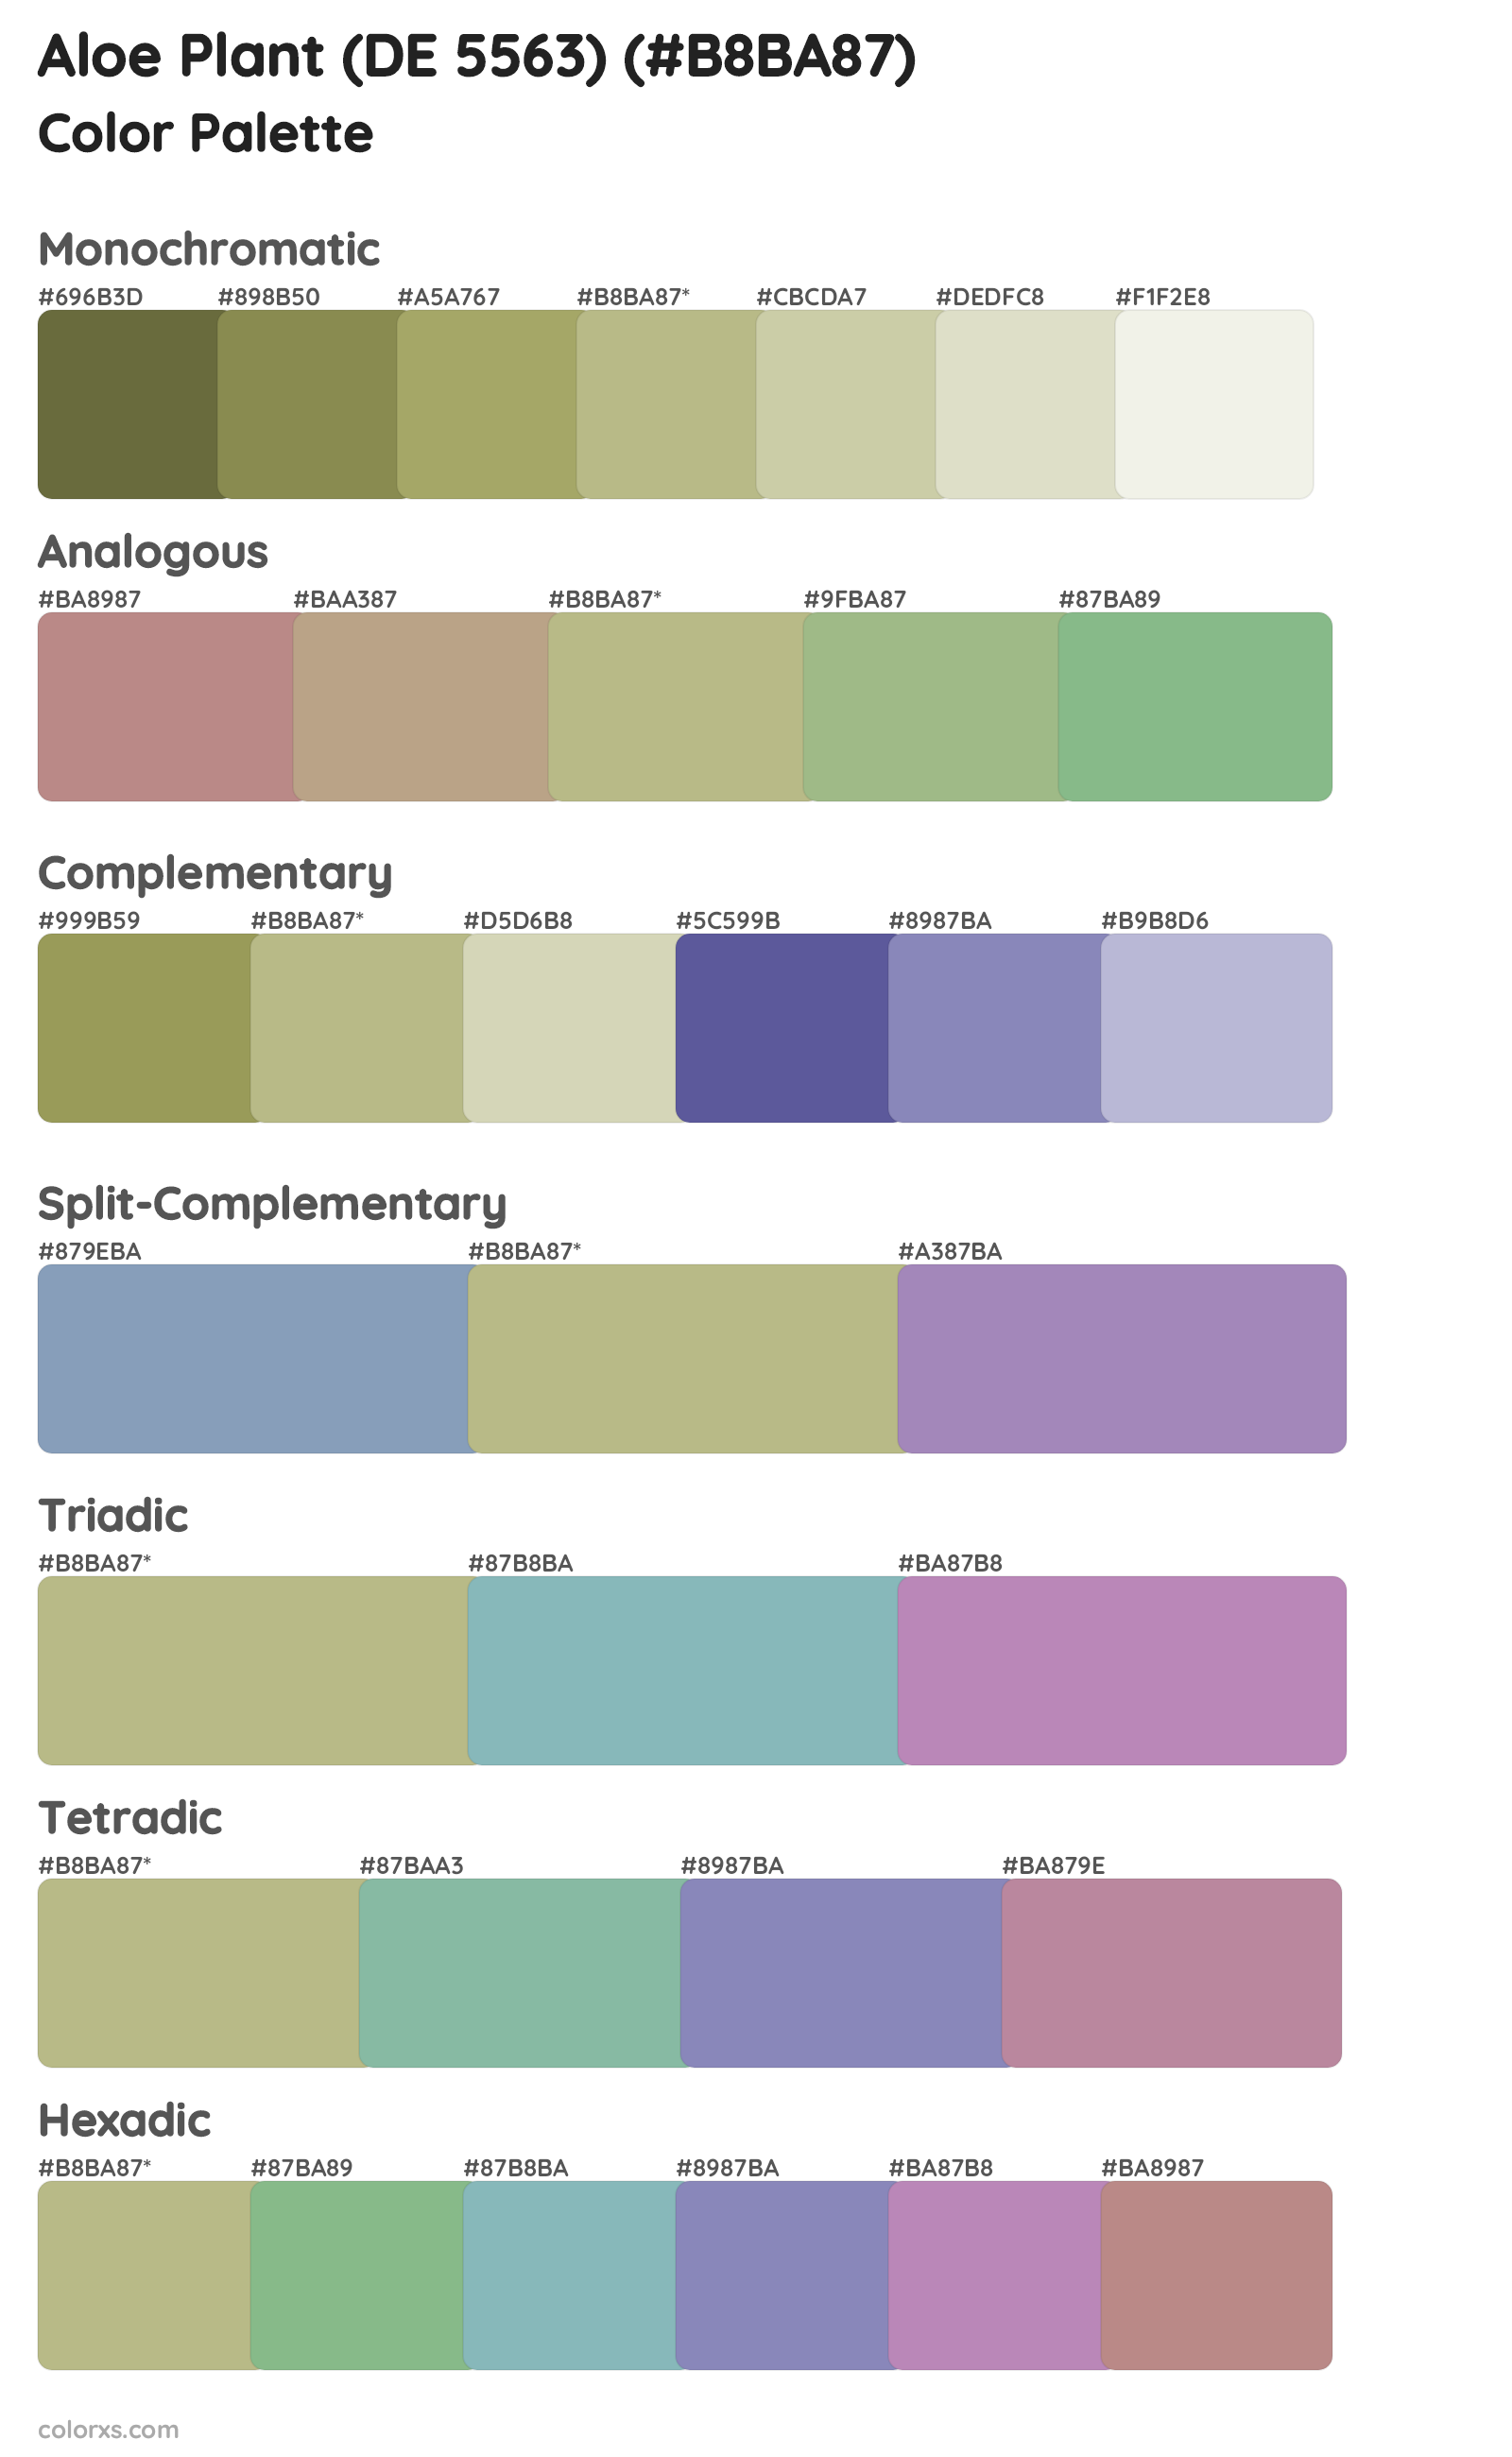 Aloe Plant (DE 5563) Color Scheme Palettes